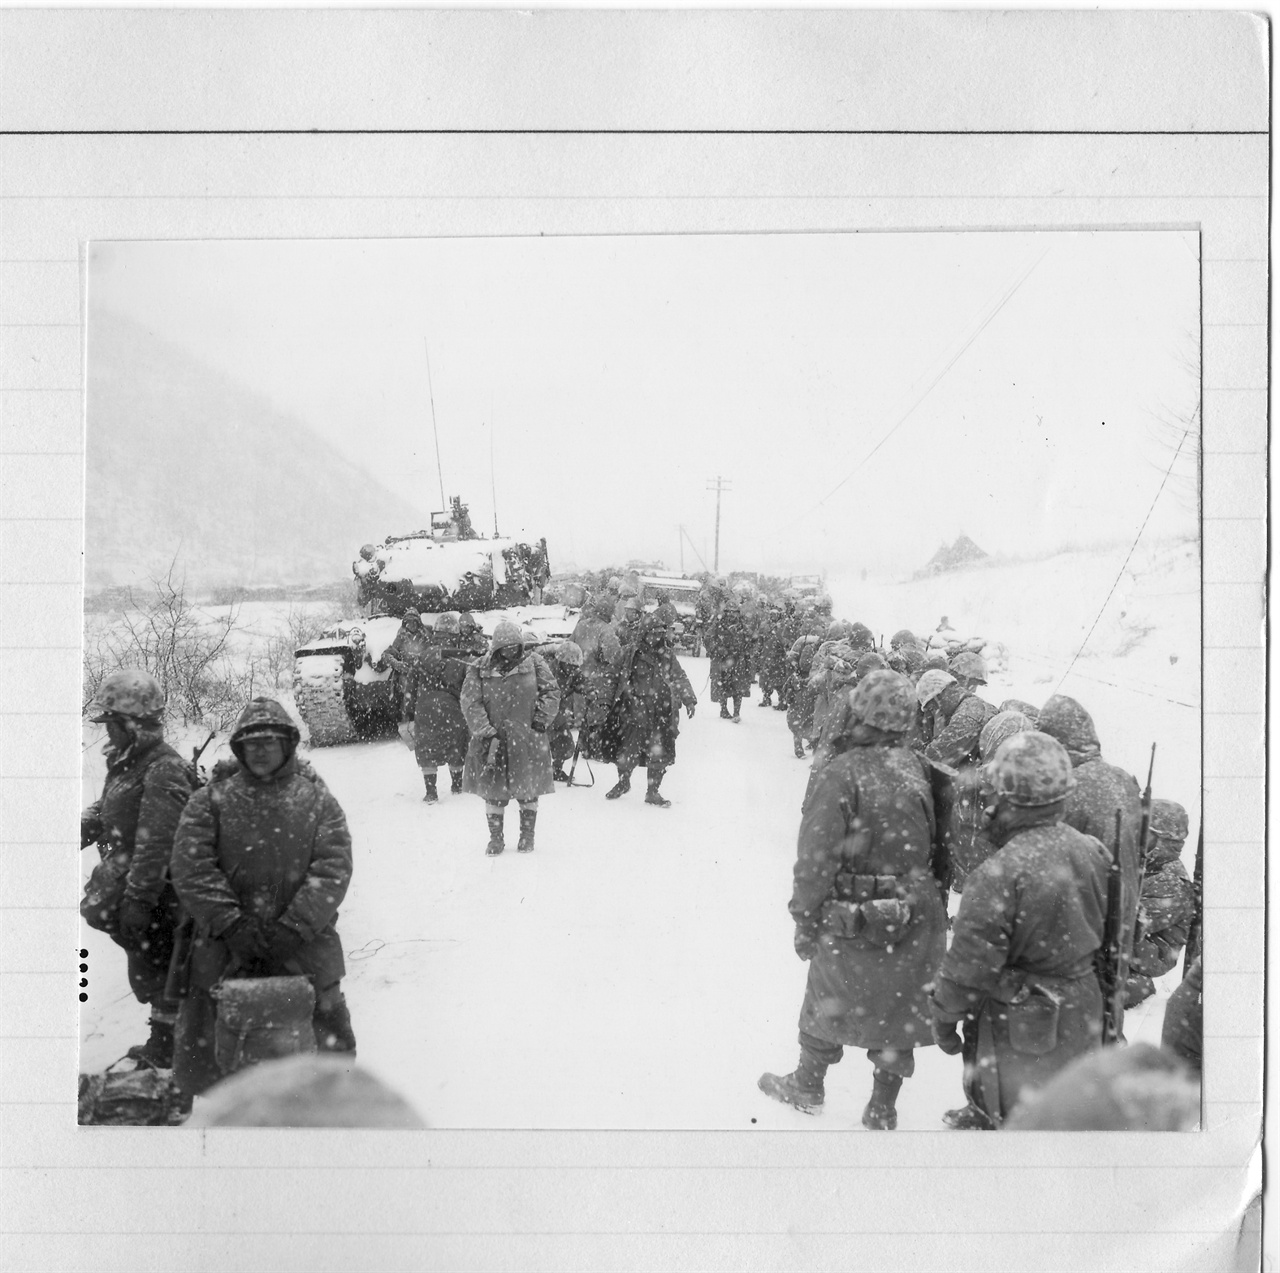  1950. 12. 8. 유엔군들이 장진호작전에서 참패한 뒤 고토리로 마을길을 따라 후퇴하고 있다. 